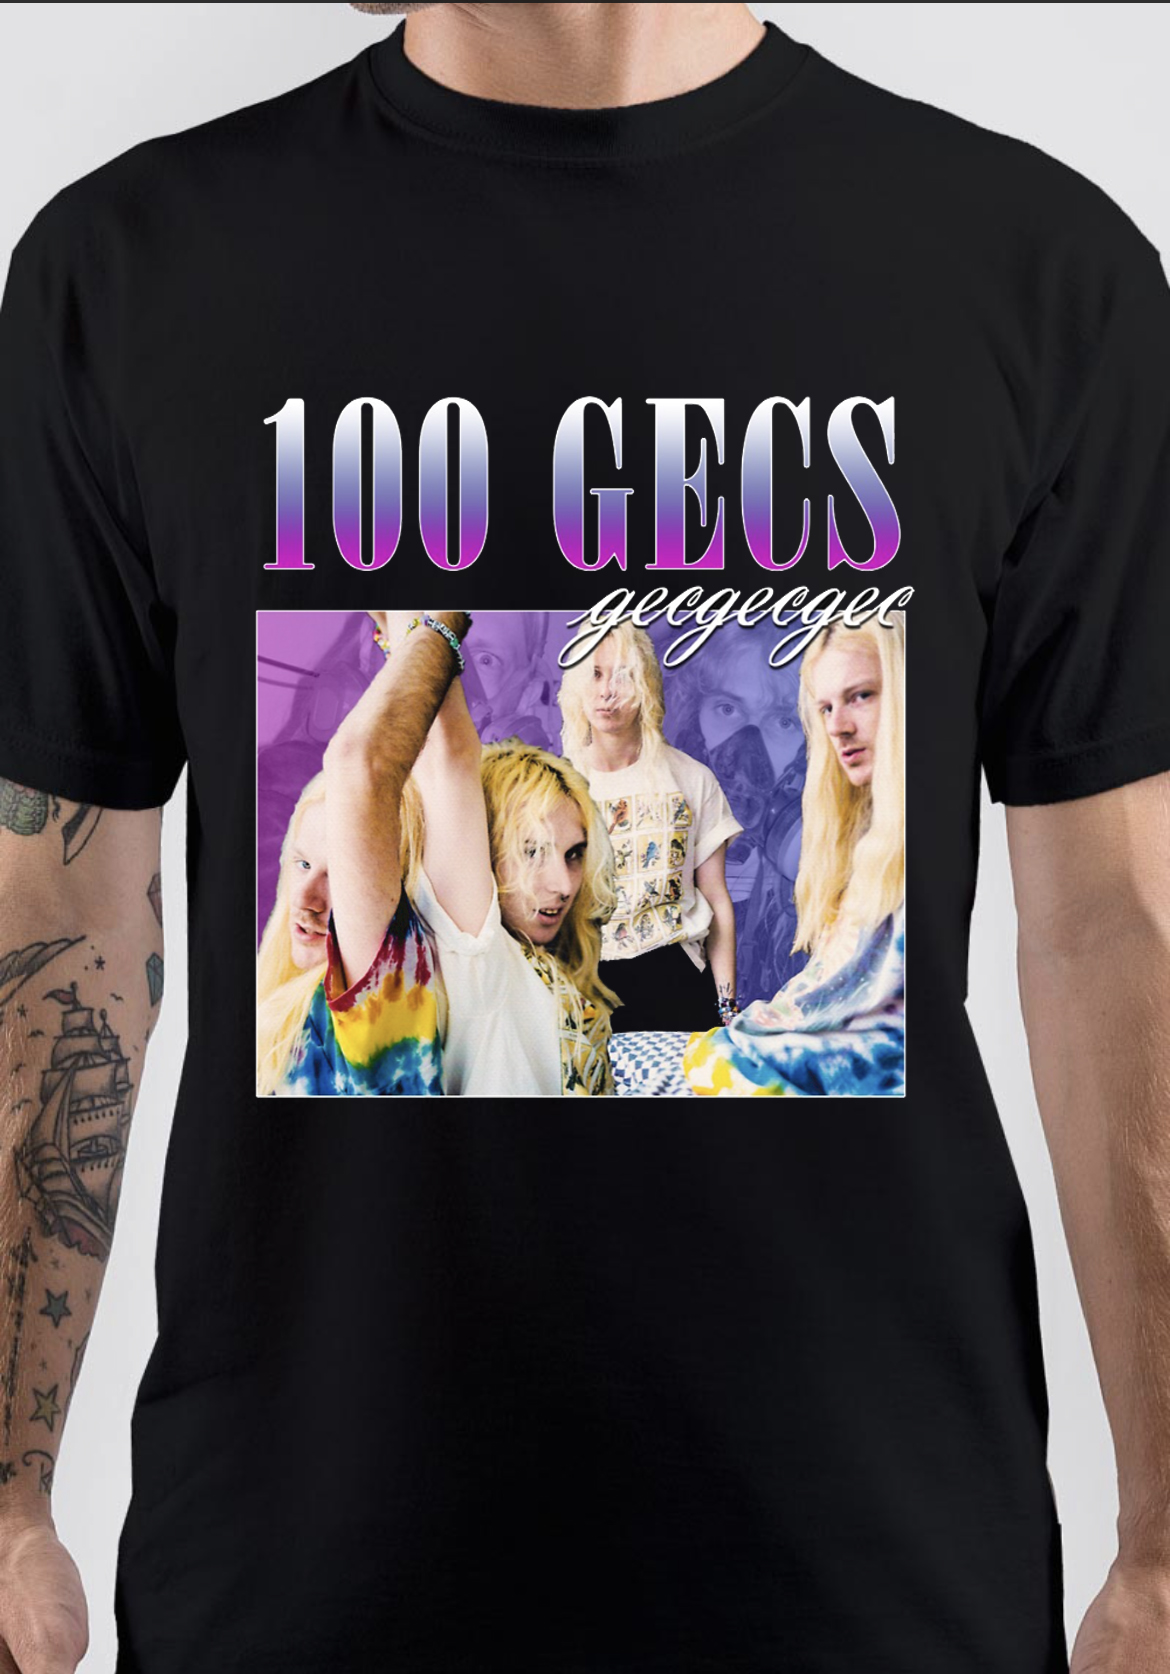 100 Gecs T-Shirt And Merchandise